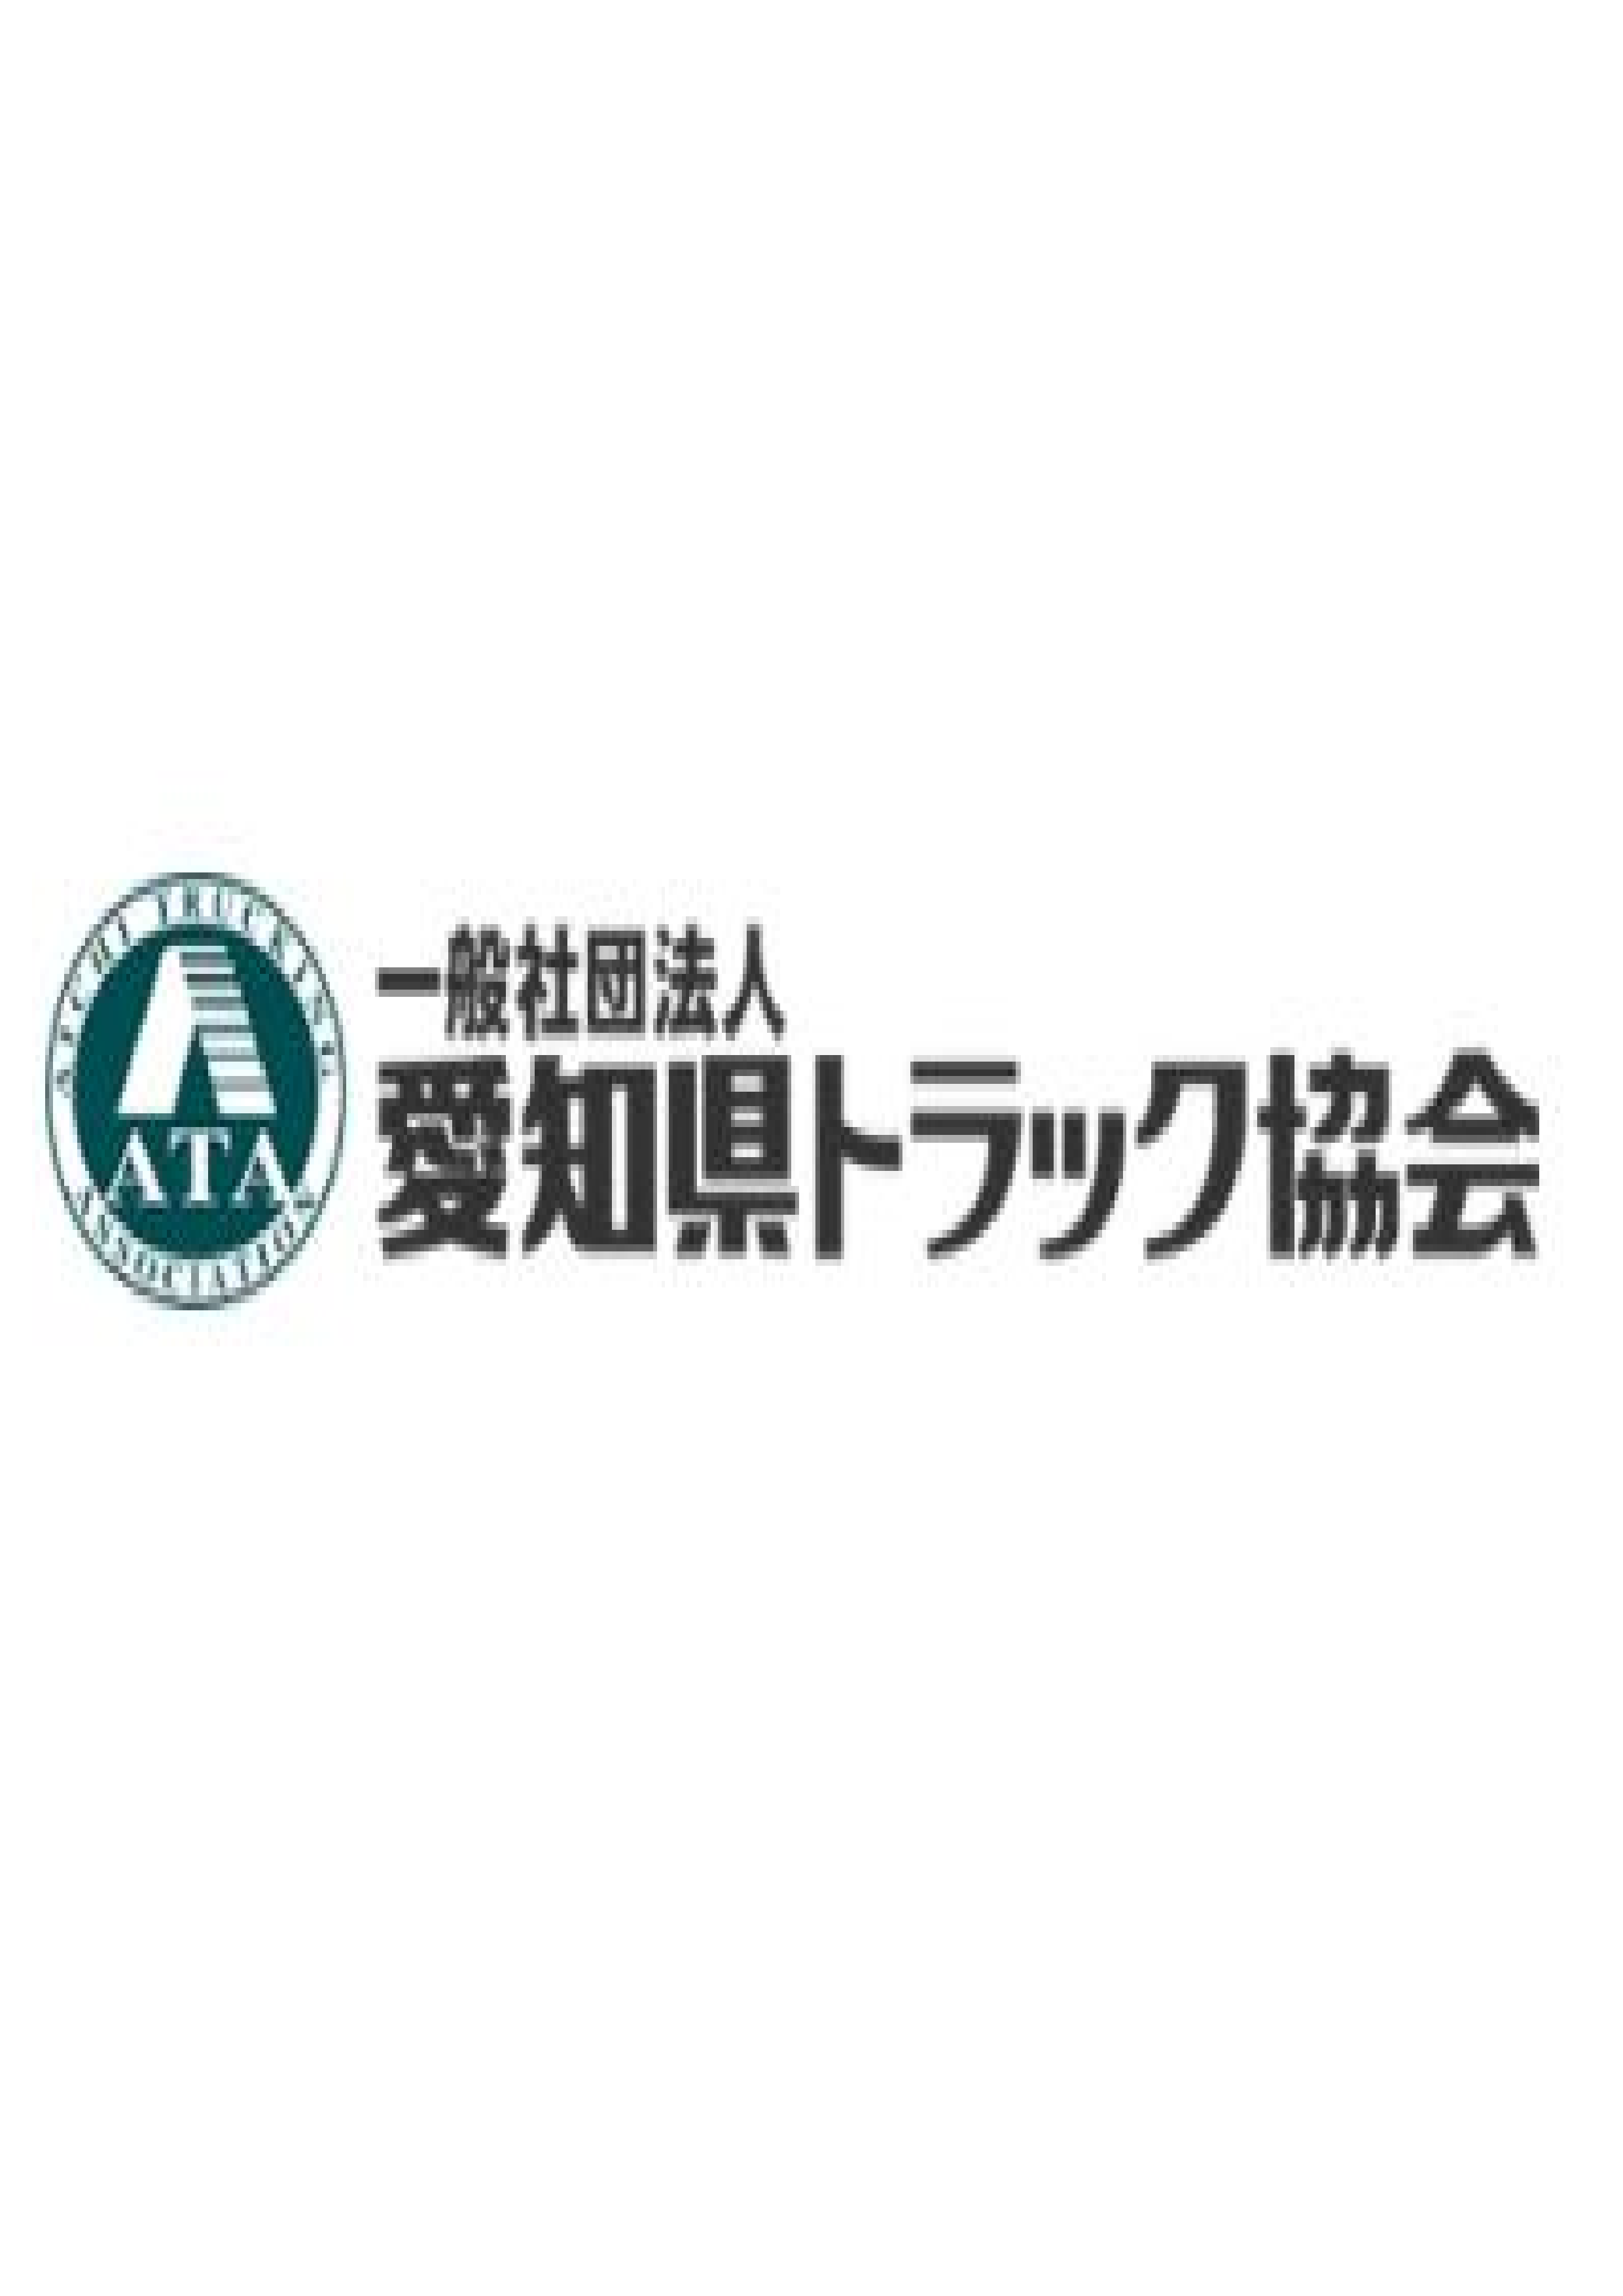 愛知県トラック協会